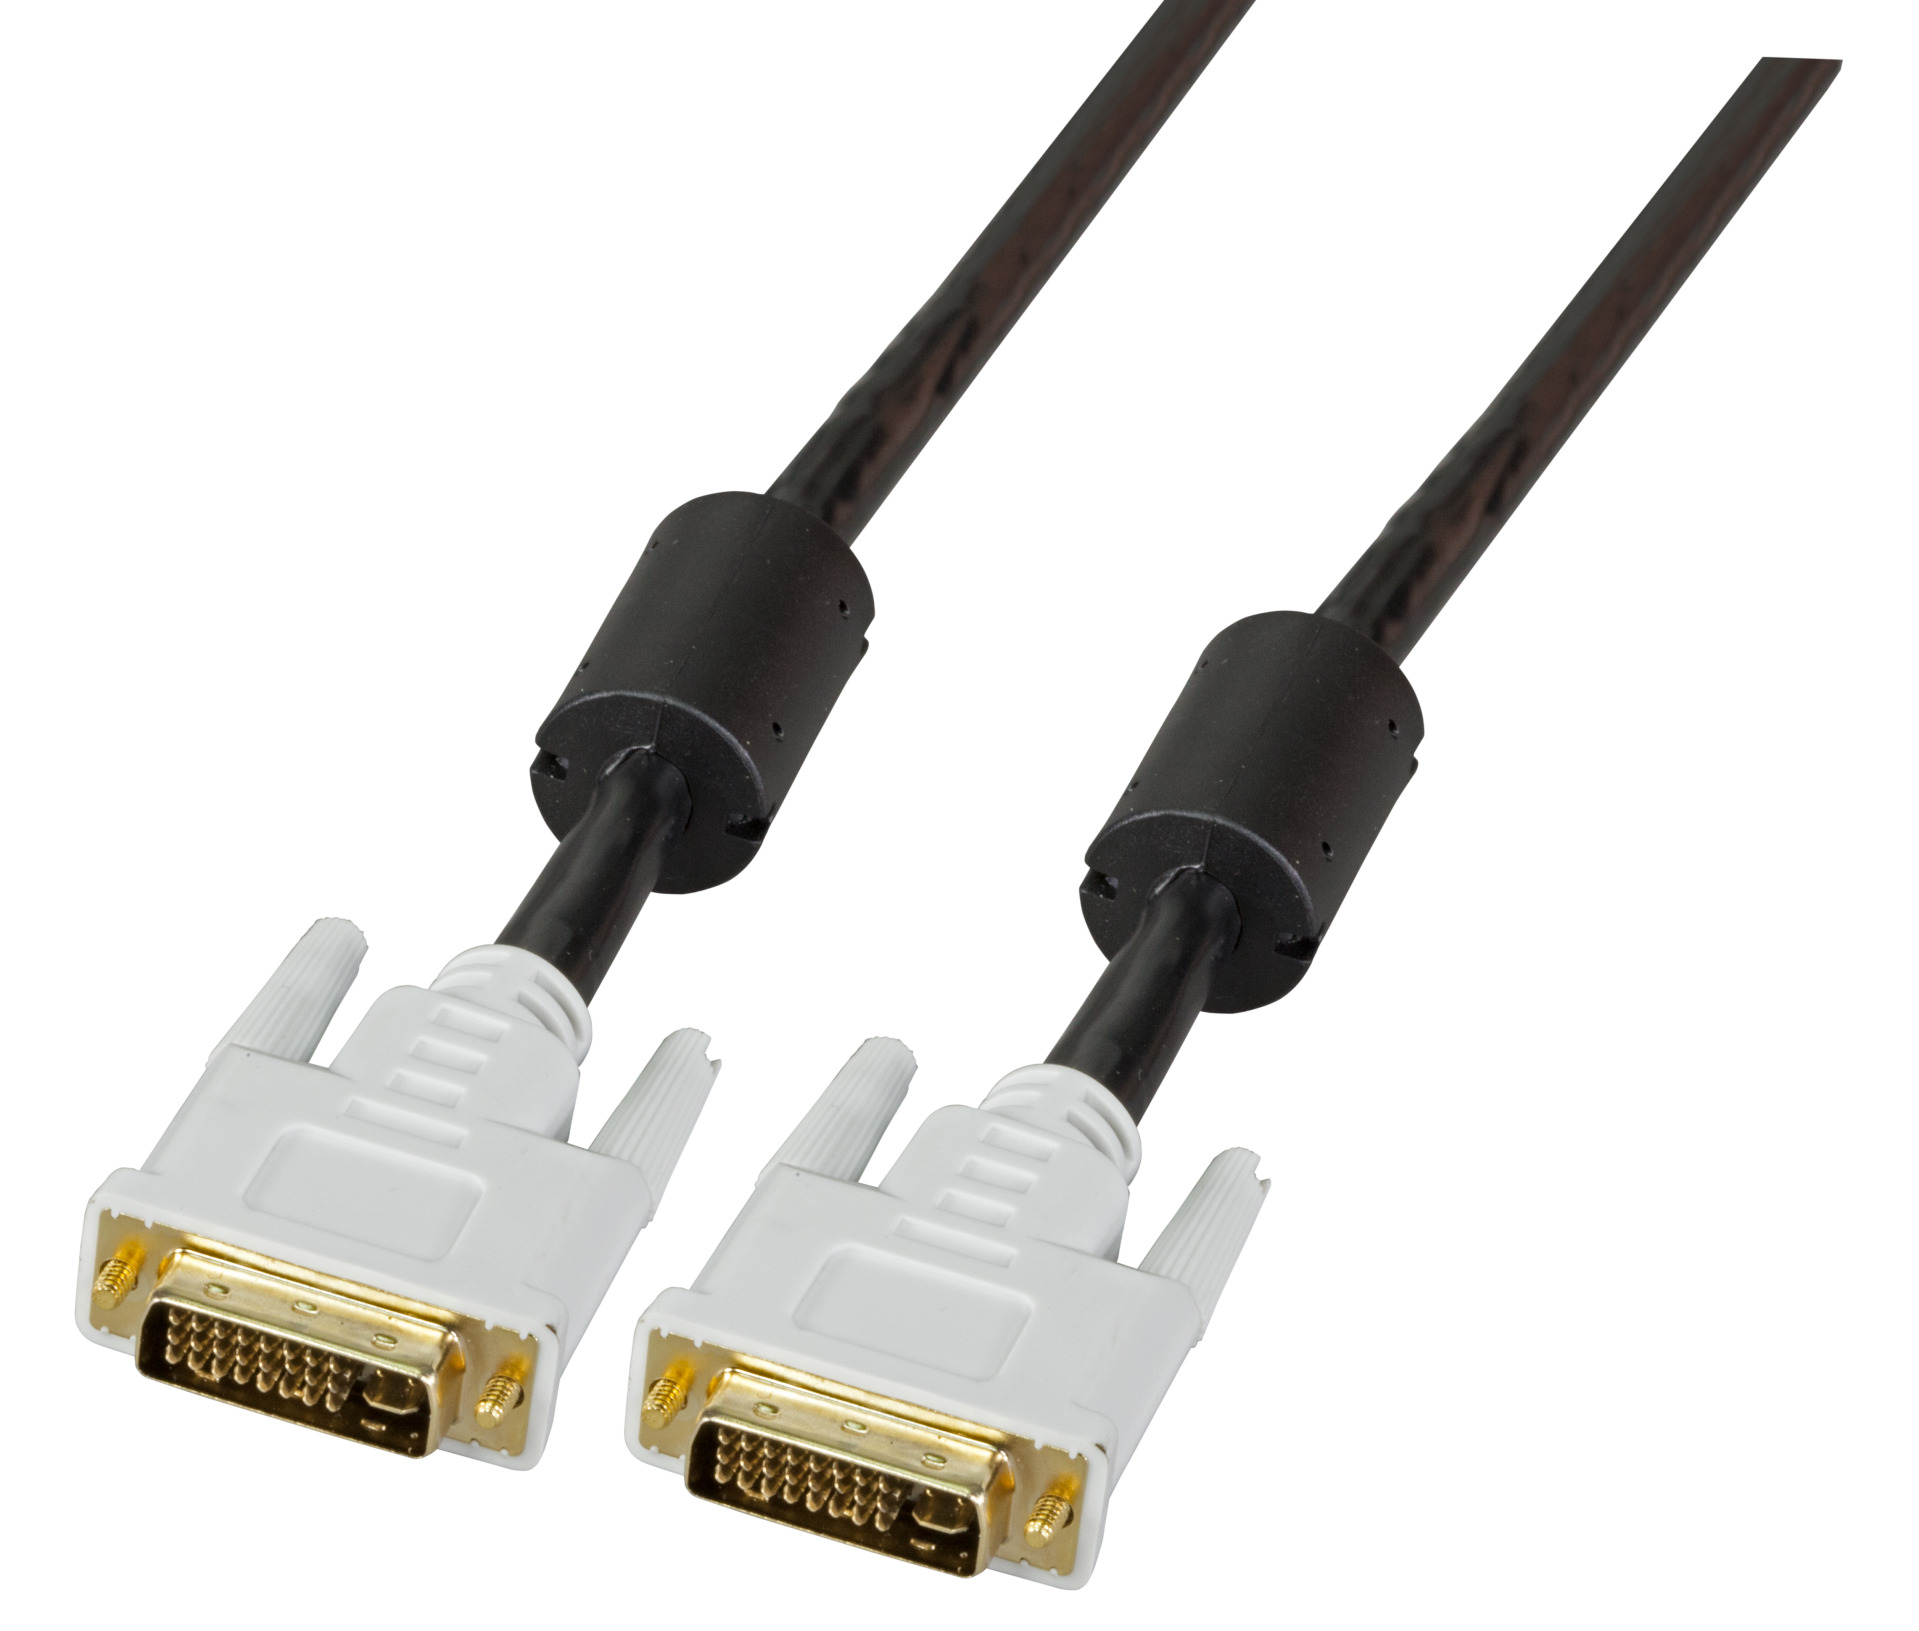 DVI-I Dual Link Cable + Analog, 2x DVI-l 24+5, M-M, AWG 28, 5,0m, black